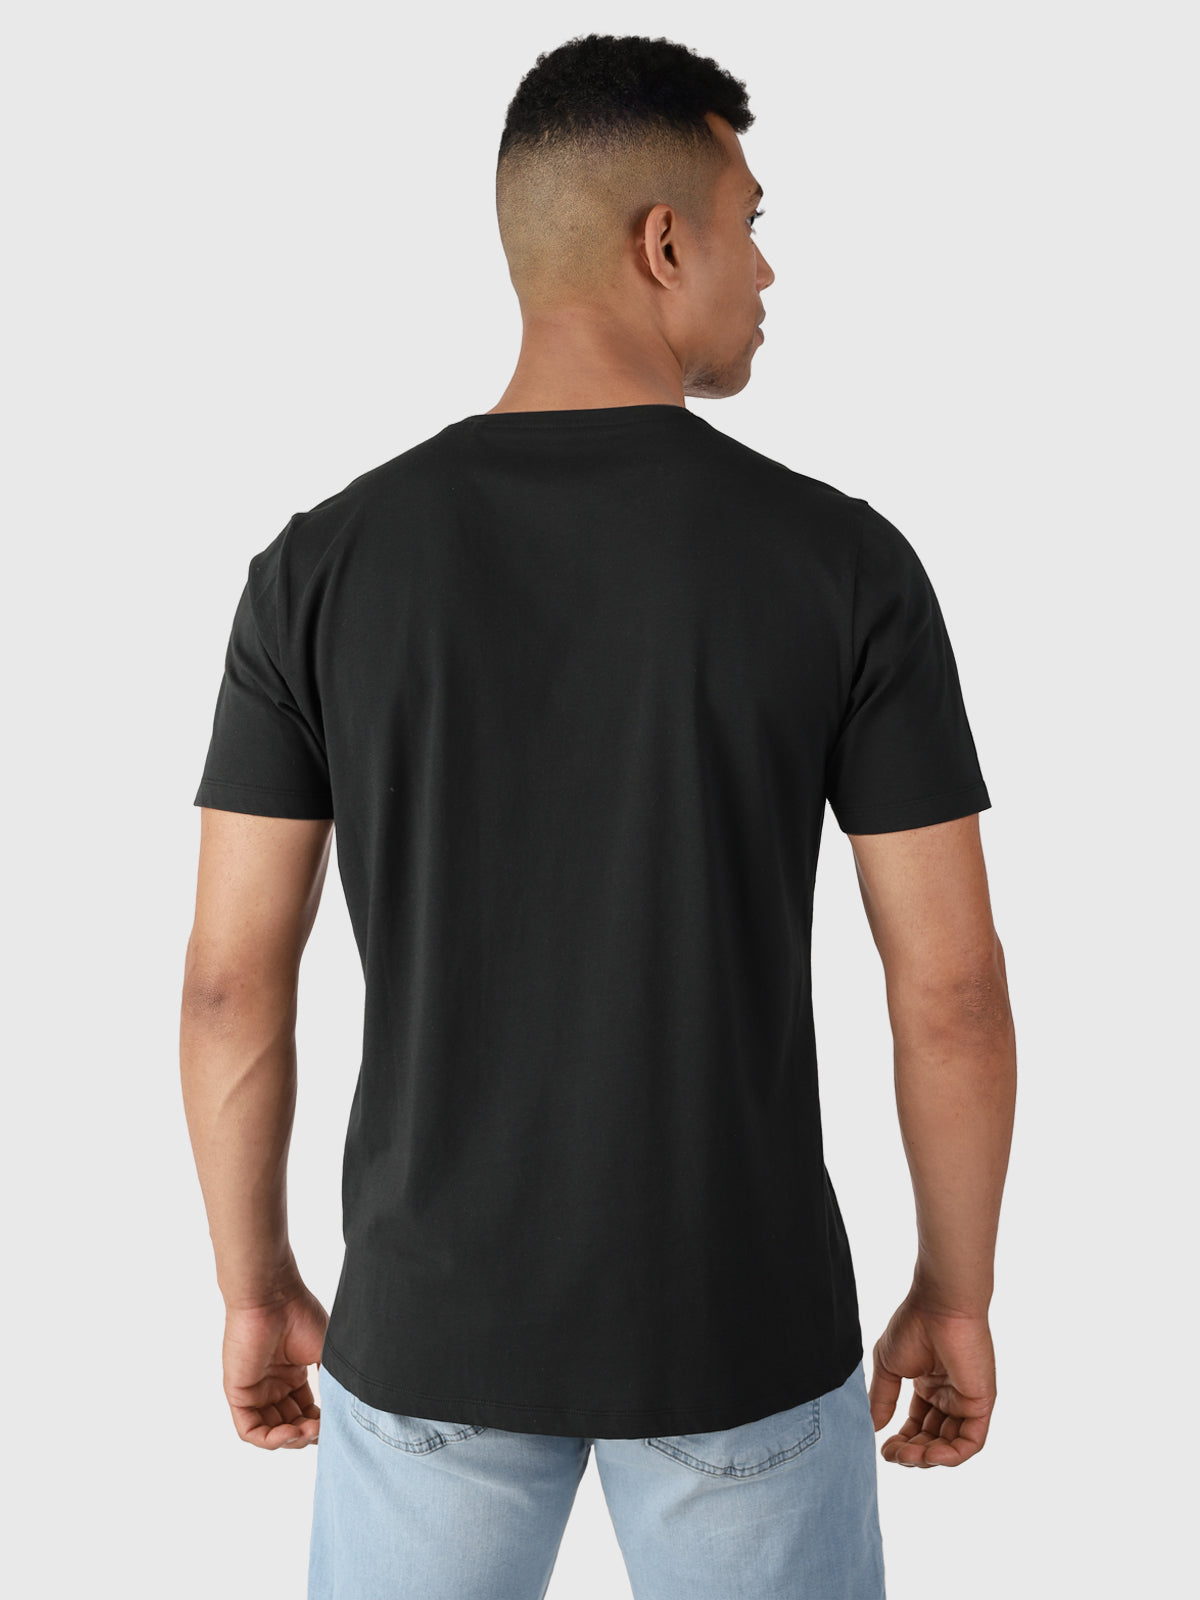 Naval-R Herren T-Shirt | Schwarz